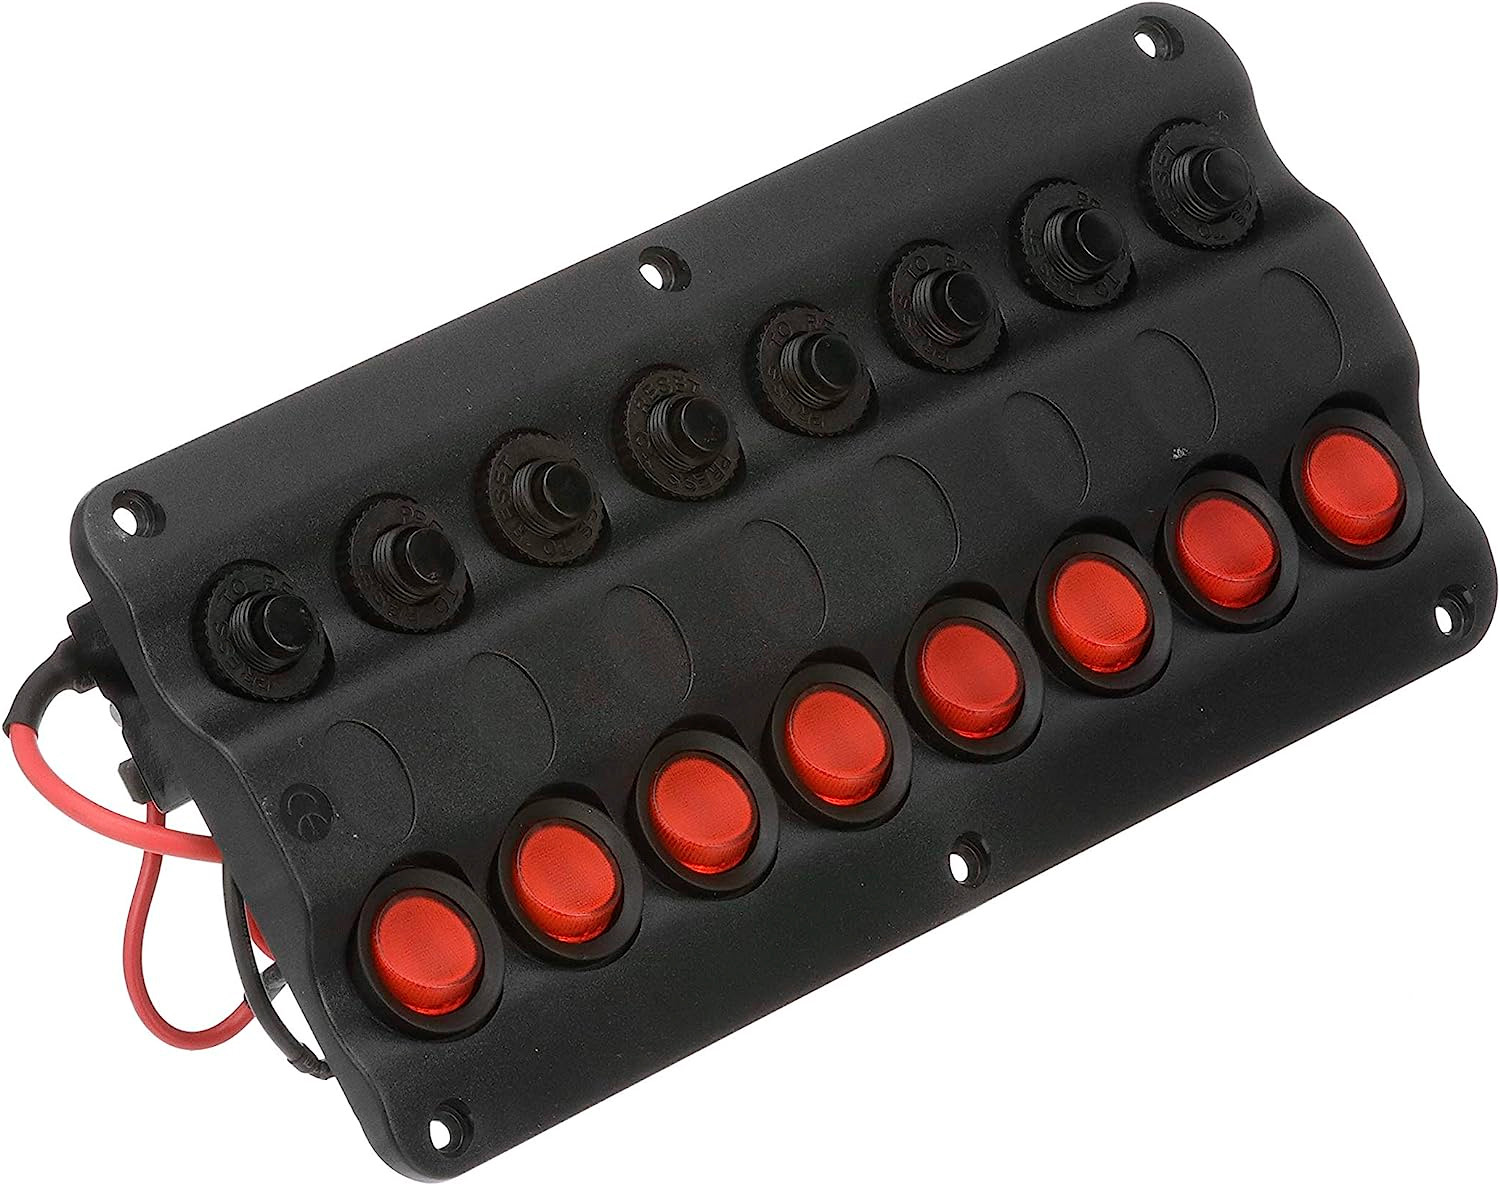 Painel Elétrico de Comando 12V com 8 Botões (Funções) Seachoice com LED e Disjuntores Fusíveis p/ Barcos